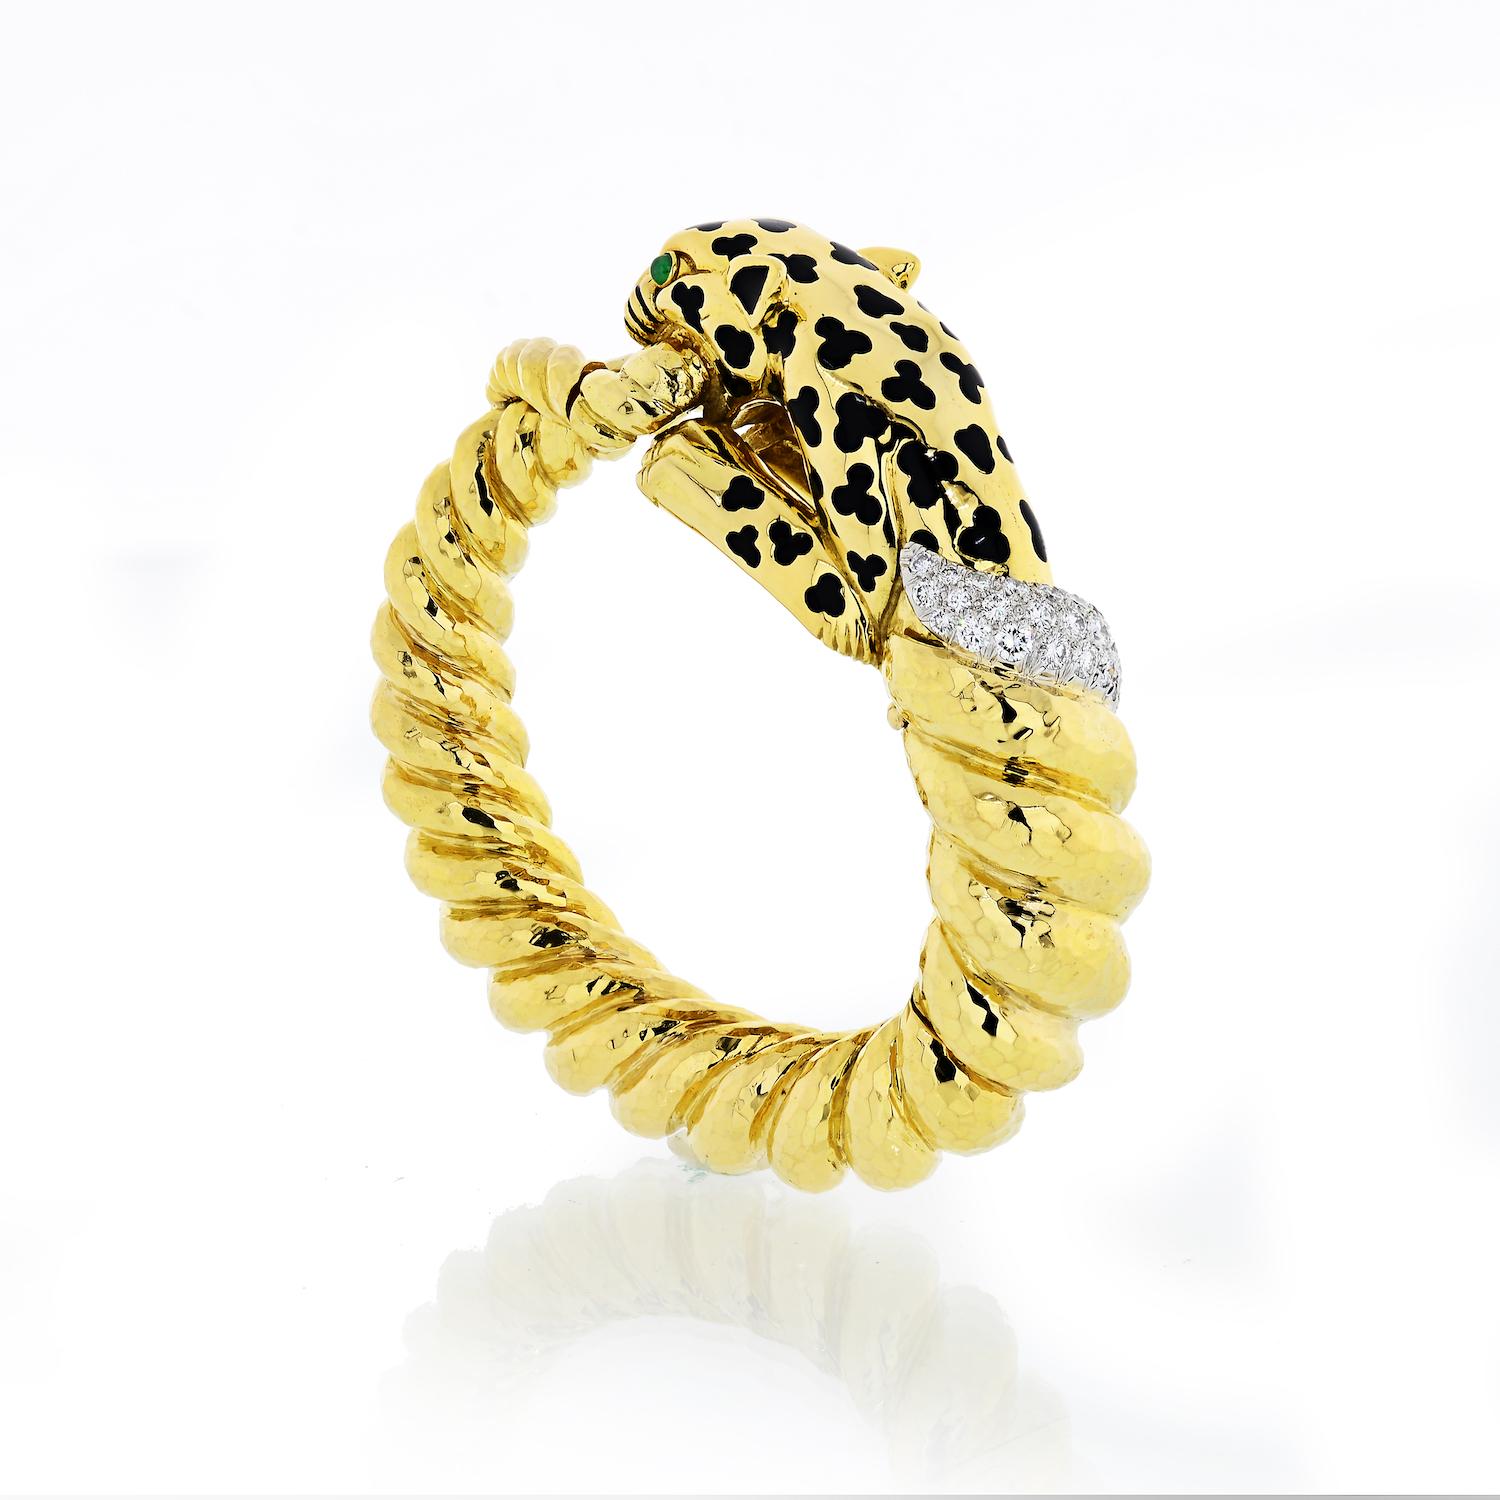 Léopard en or jaune David Webb conçu comme un bracelet bangle torsadé, décoré de taches en émail noir, d'yeux en émeraude cabochon et de diamants sertis en pavé.

Le bracelet Léopard est fabriqué en or jaune 18 carats et en platine. 

Poids total